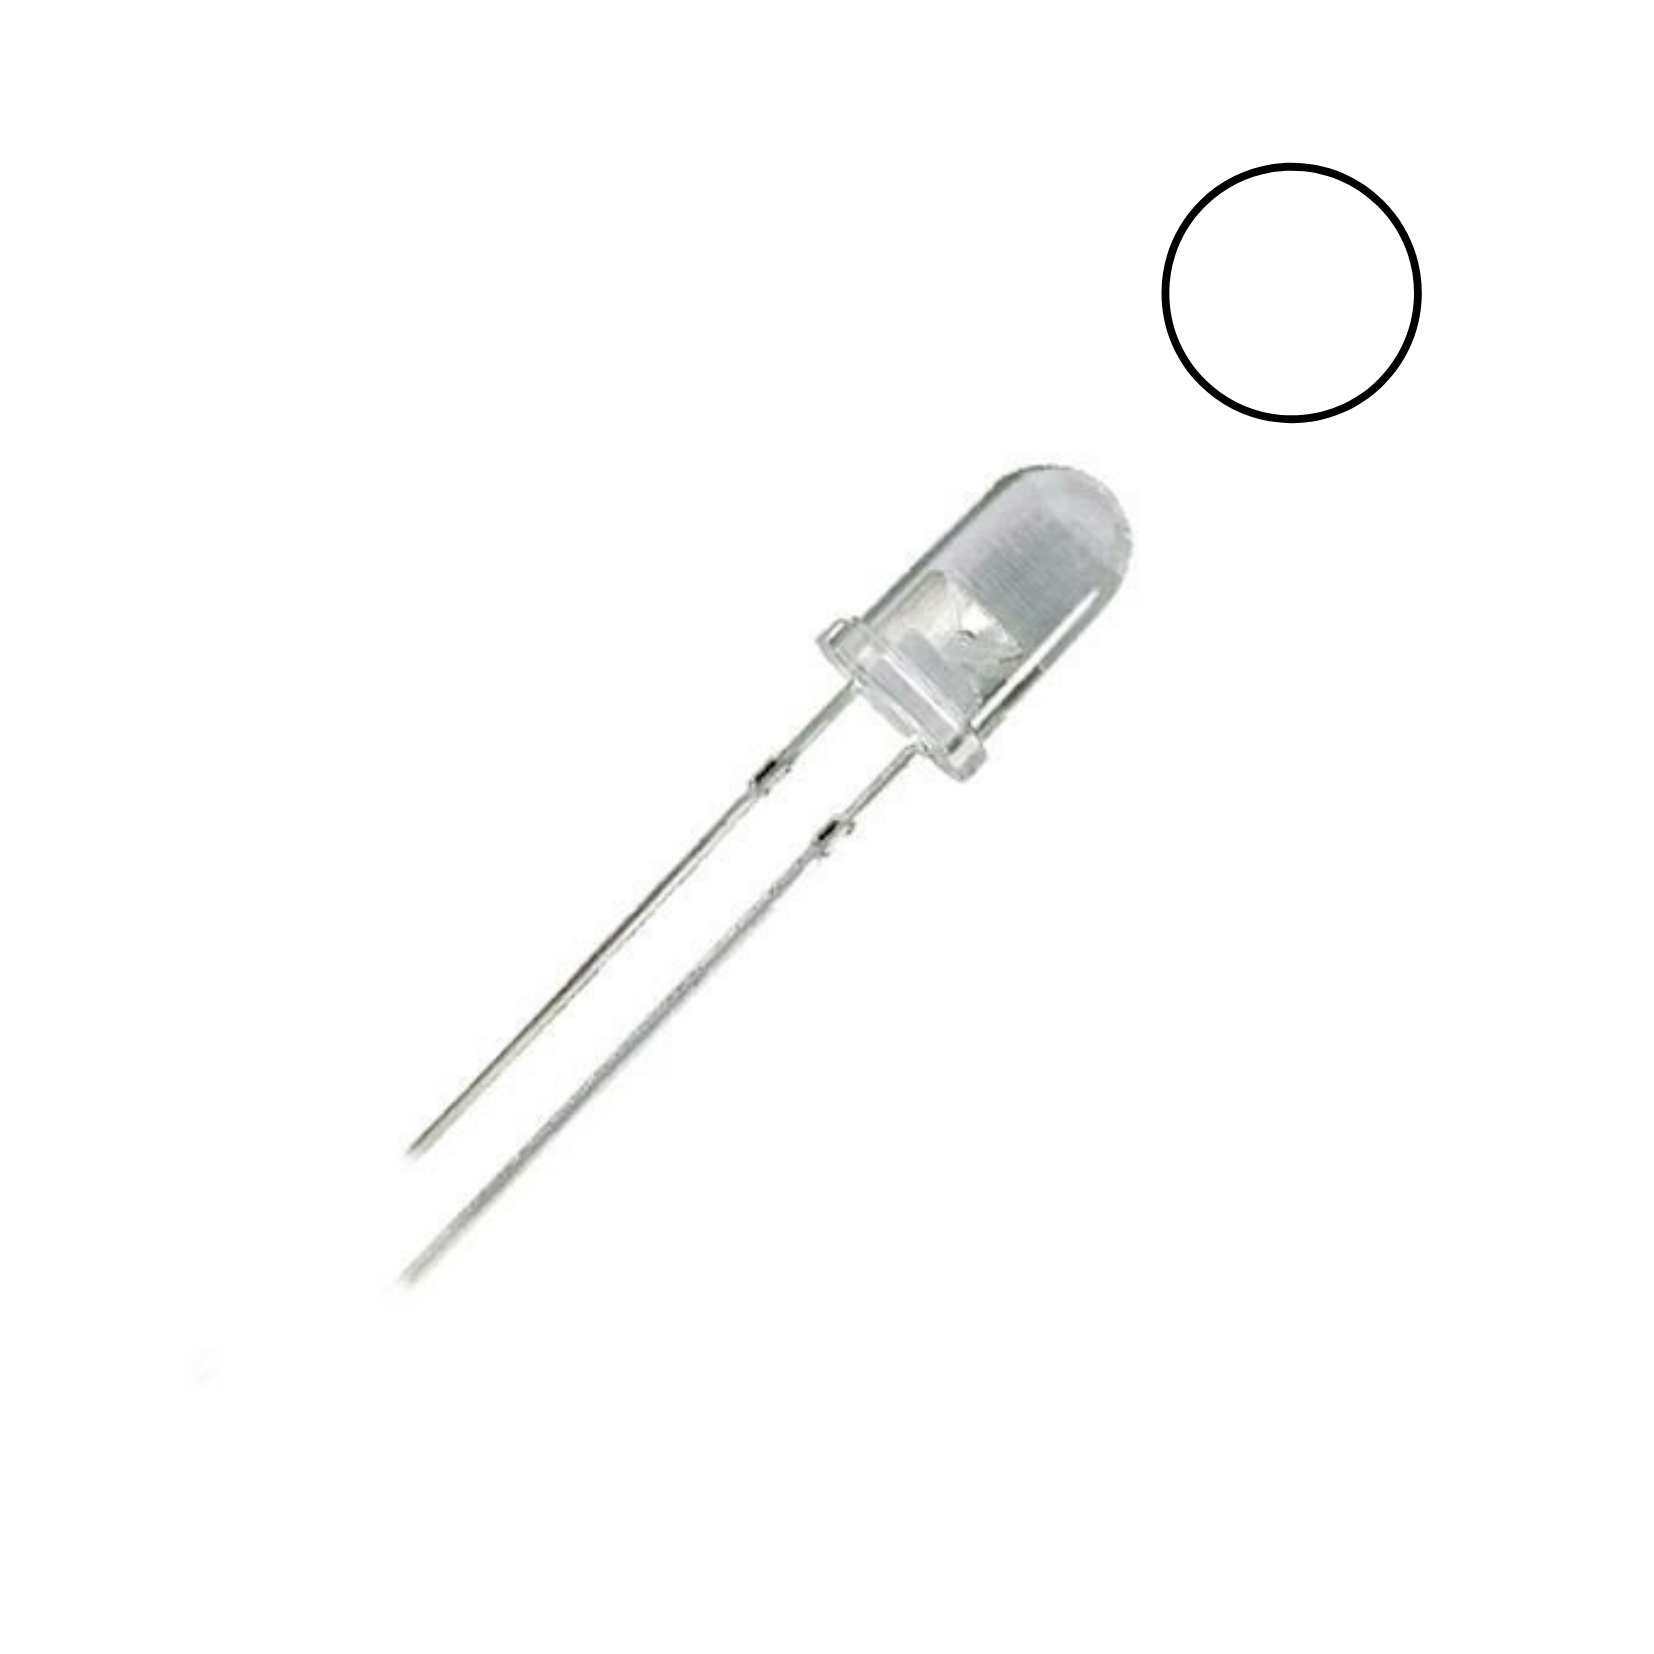 Diodo LED 5mm - blanco (hiperluminico) > diodos leds > componentes